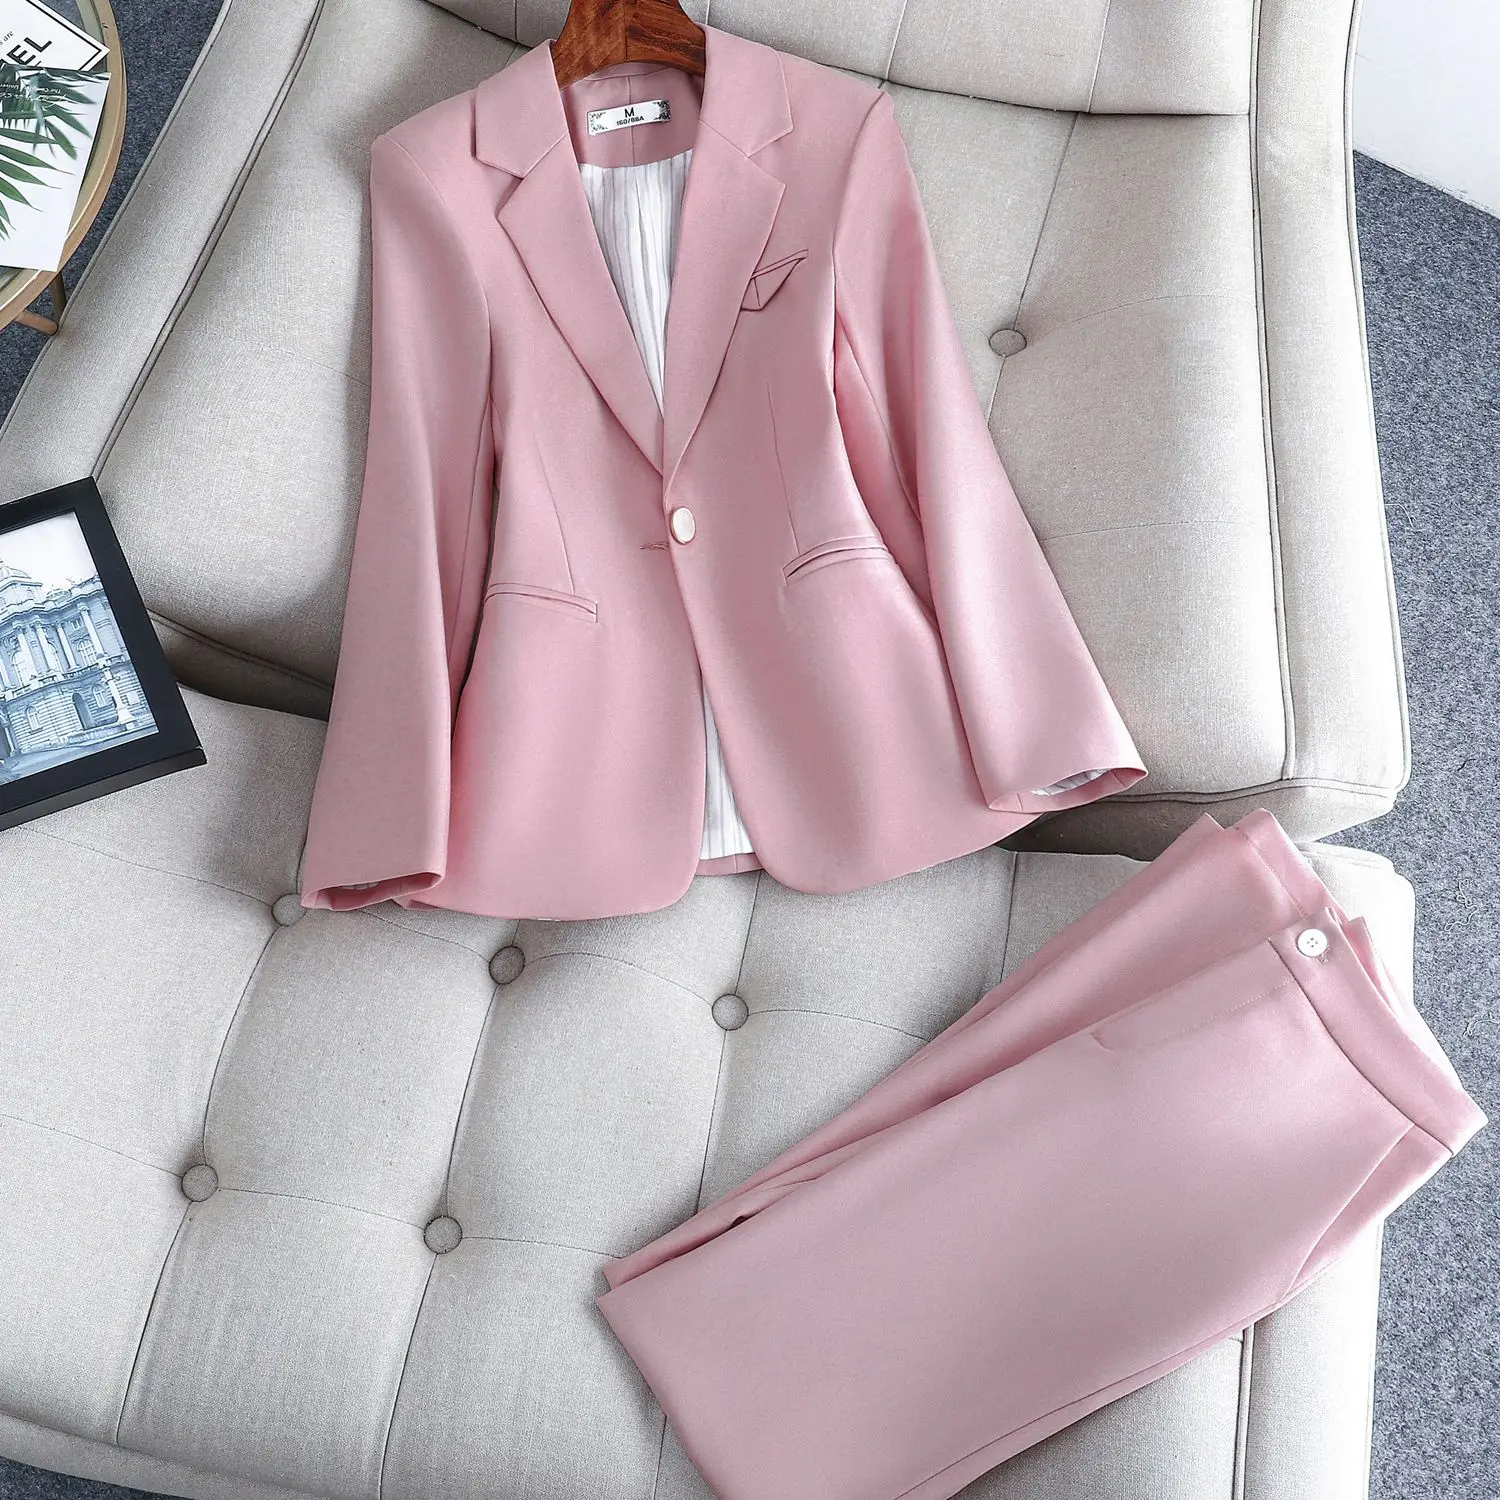 Pink autumn winter new women's suit pants suit office pants professional jacket and Pants Set2 piece set pant suits for women